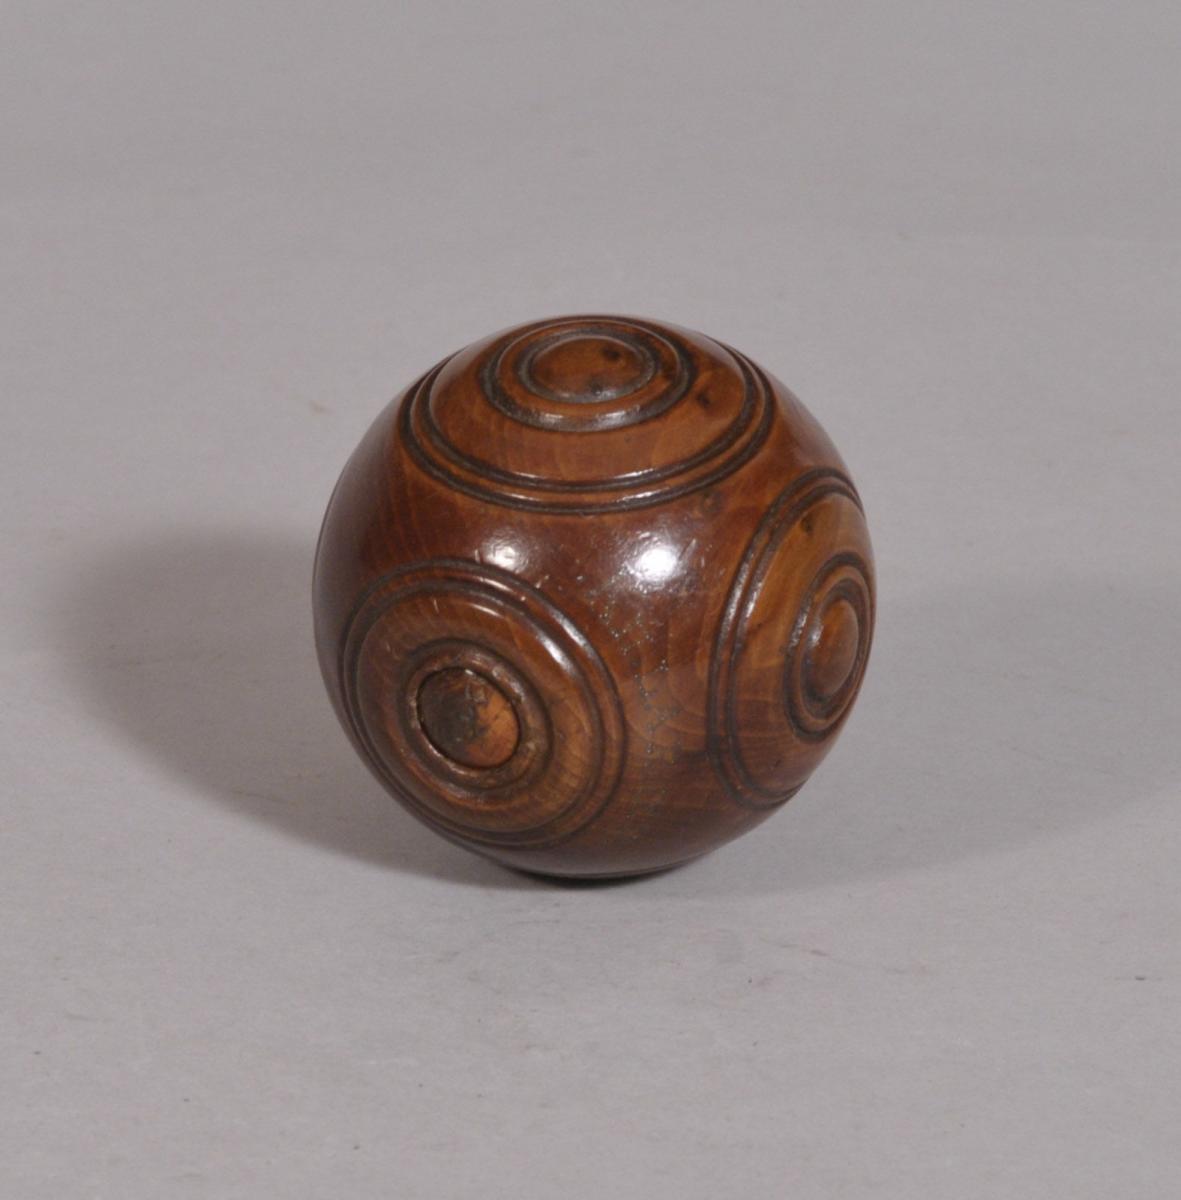 S/3415 Antique Treen 19th Century Laburnum Puzzle Ball